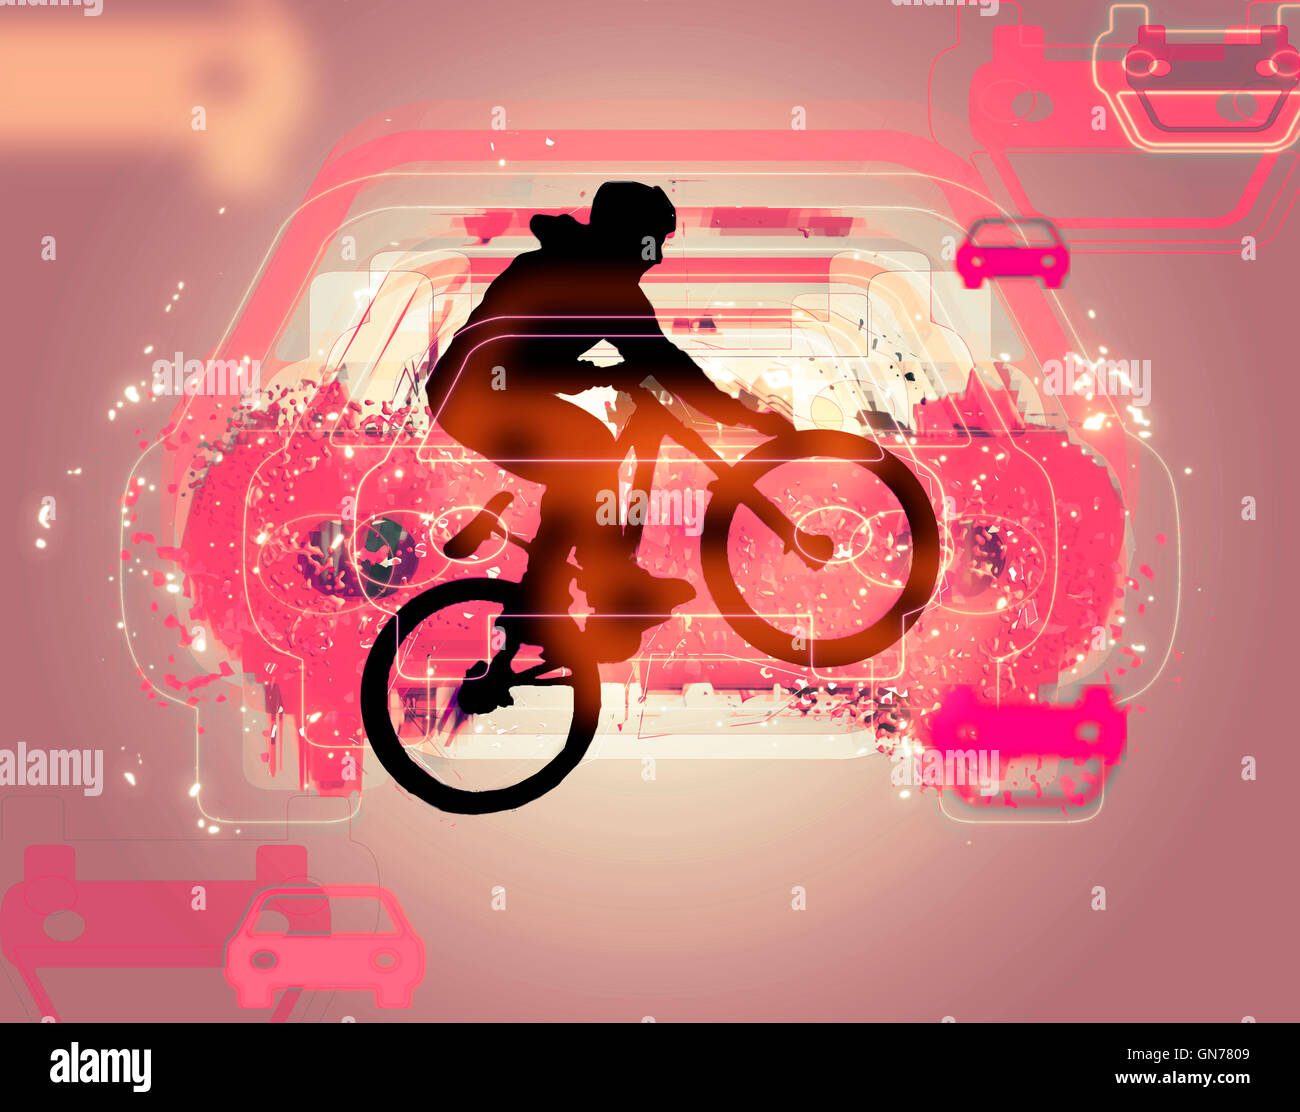 Migliorate digitalmente immagine di una bicicletta stunt Foto Stock